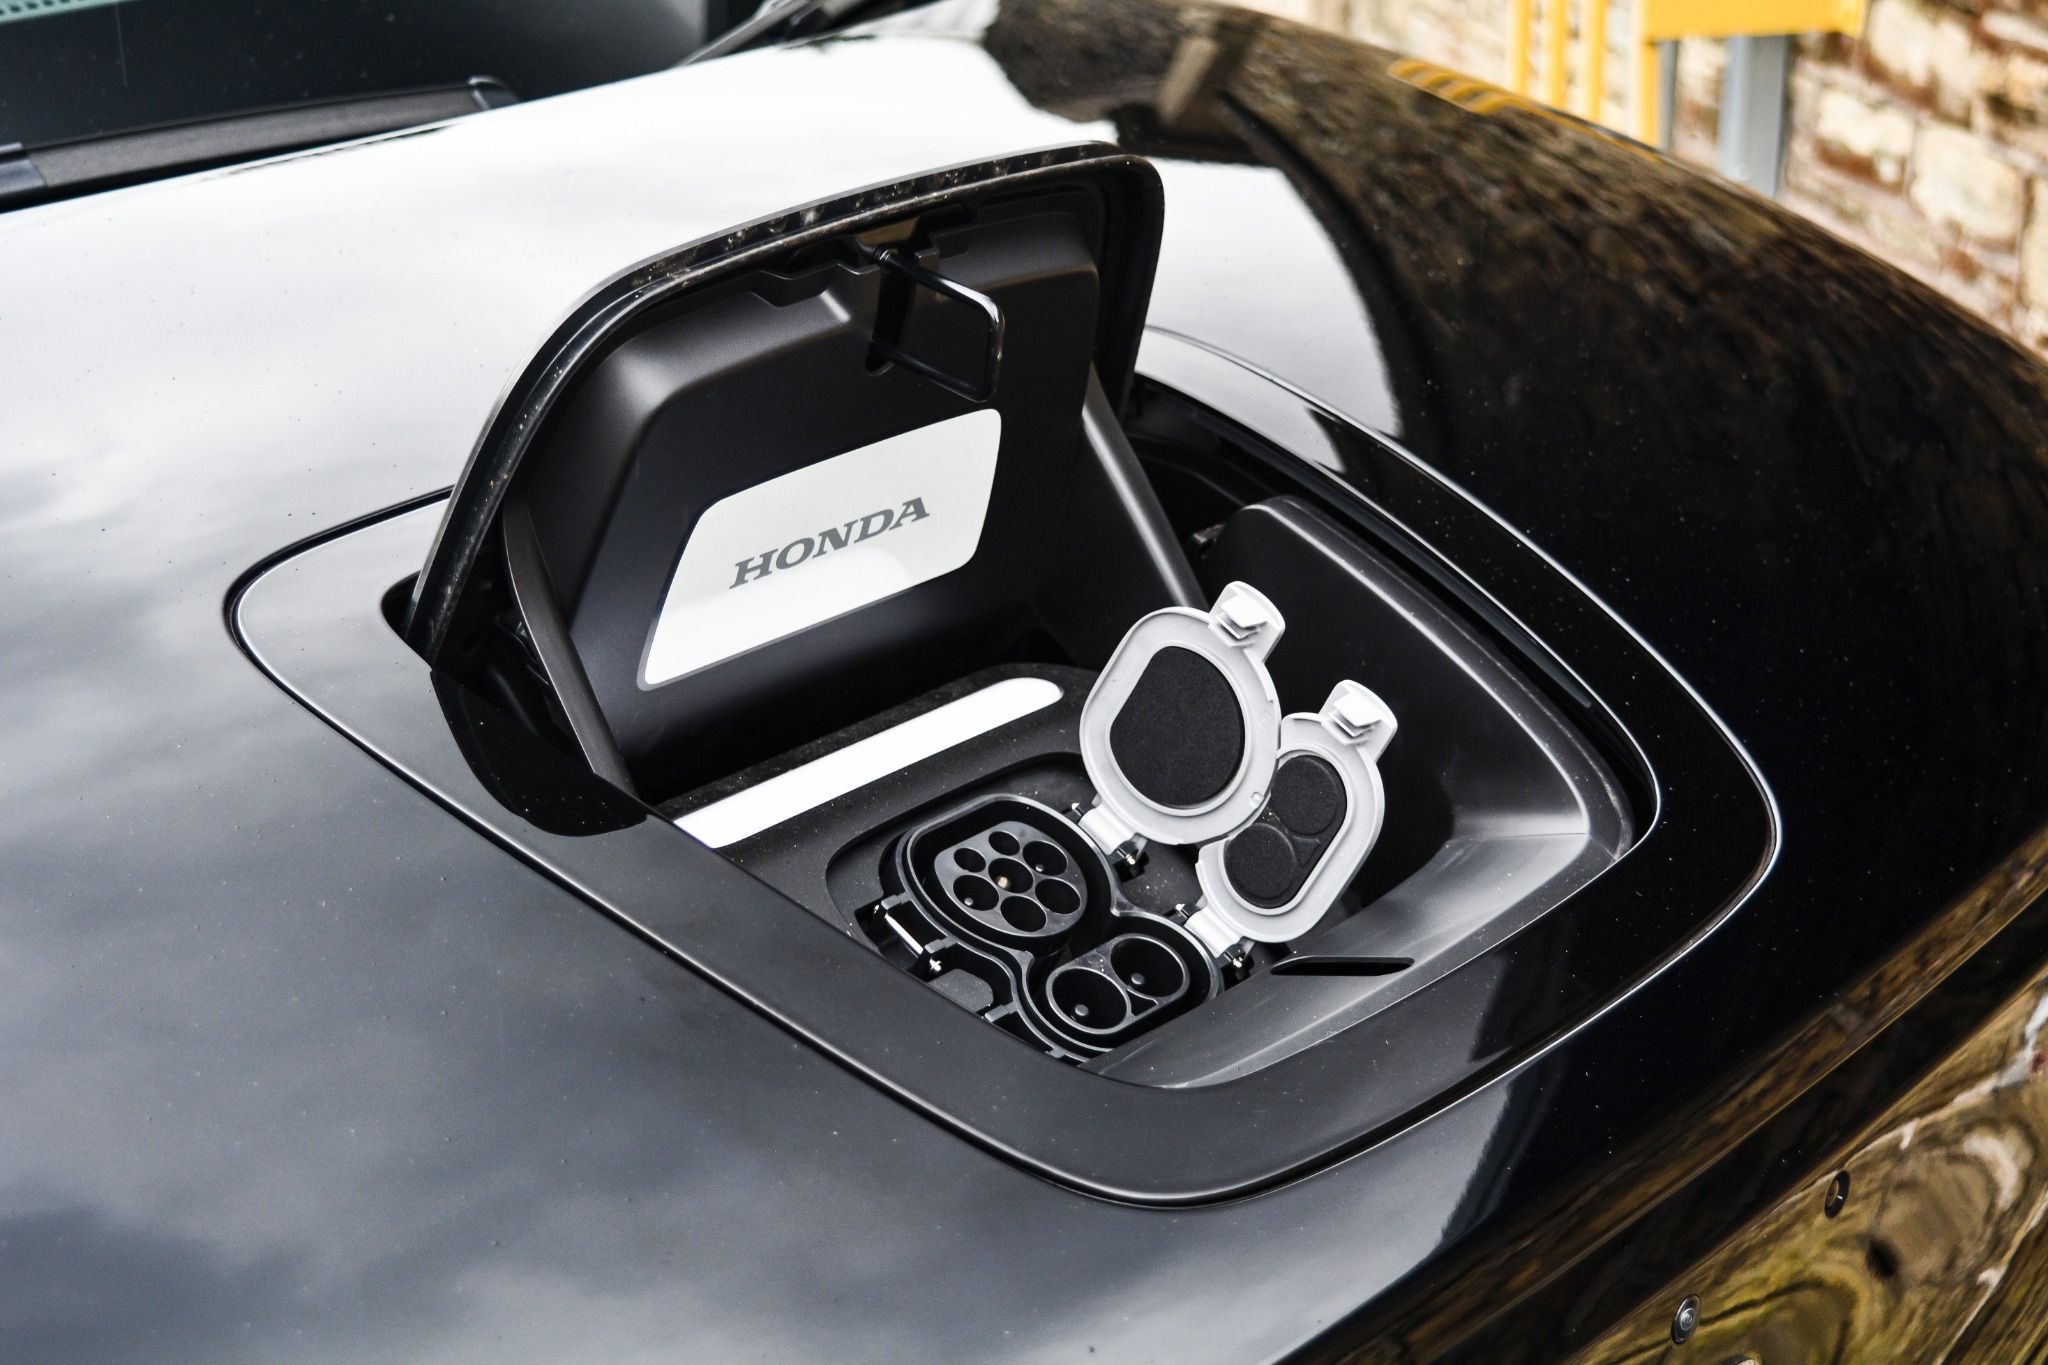 Black Honda e exterior bonnet charging port close up